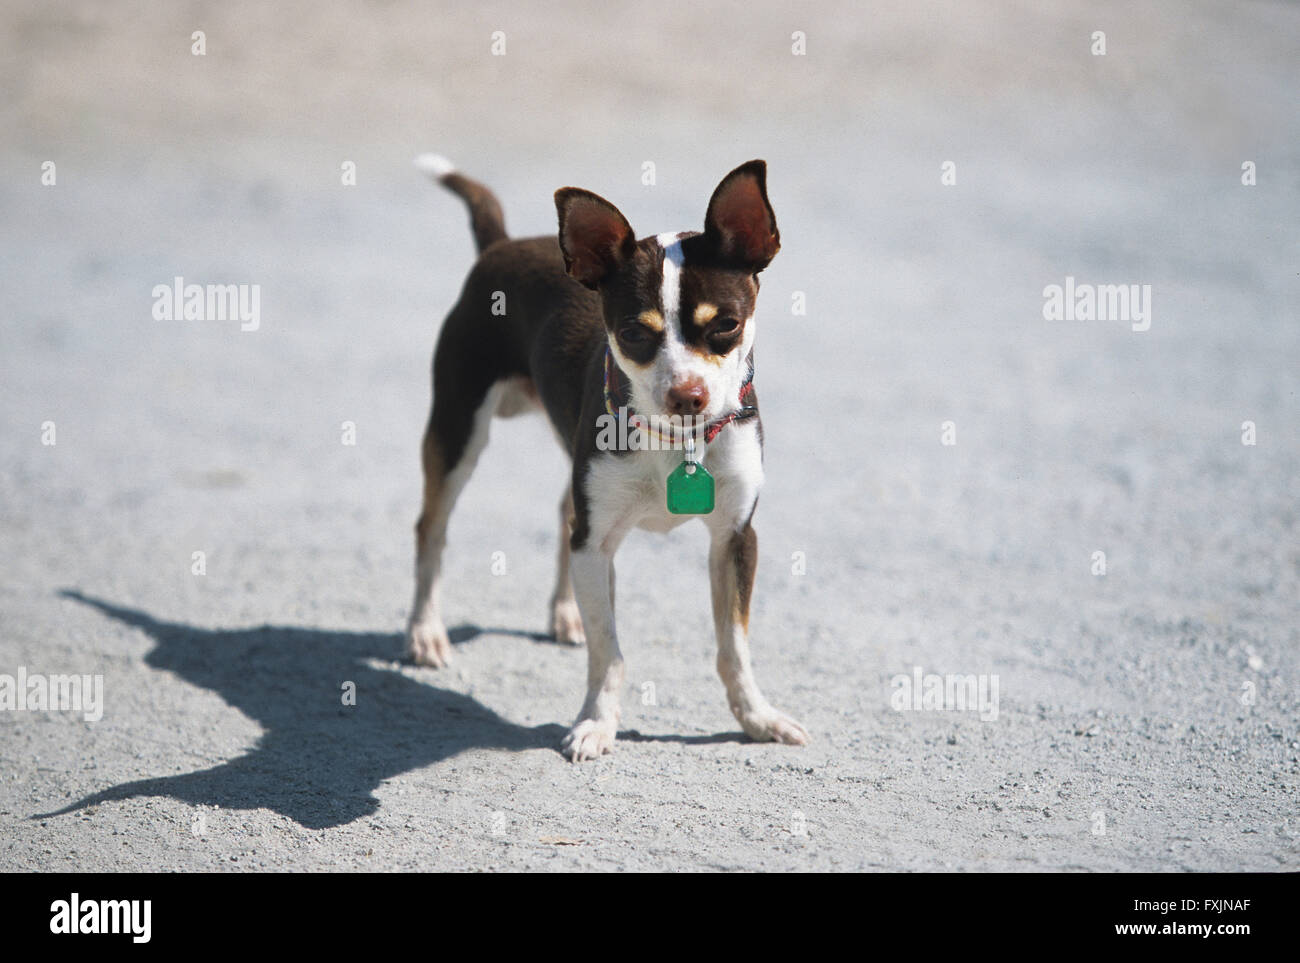 Petit chien chien chihuahua journée ensoleillée toy dog Banque D'Images